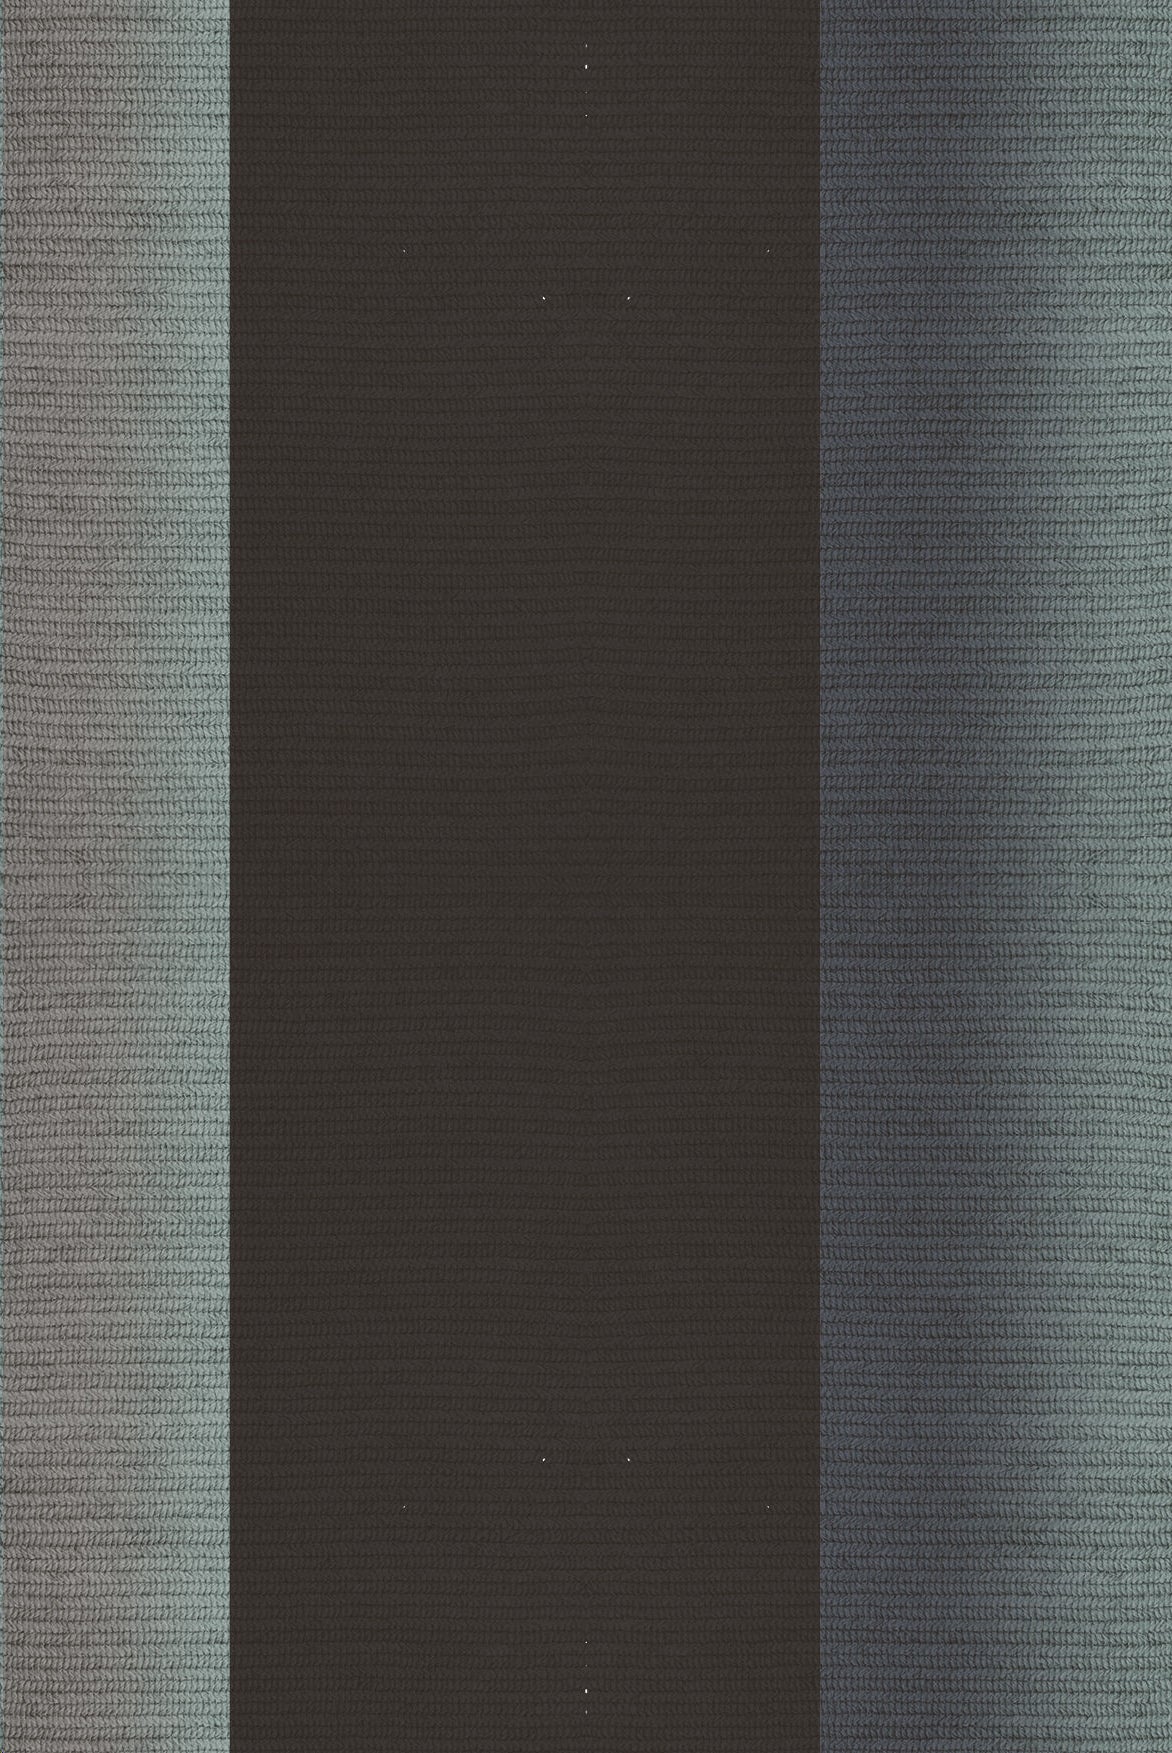 Claire Vos for Musett 'Blur' Tapis d'intérieur en Abaca, couleur Sterling, 160 x 240 cm